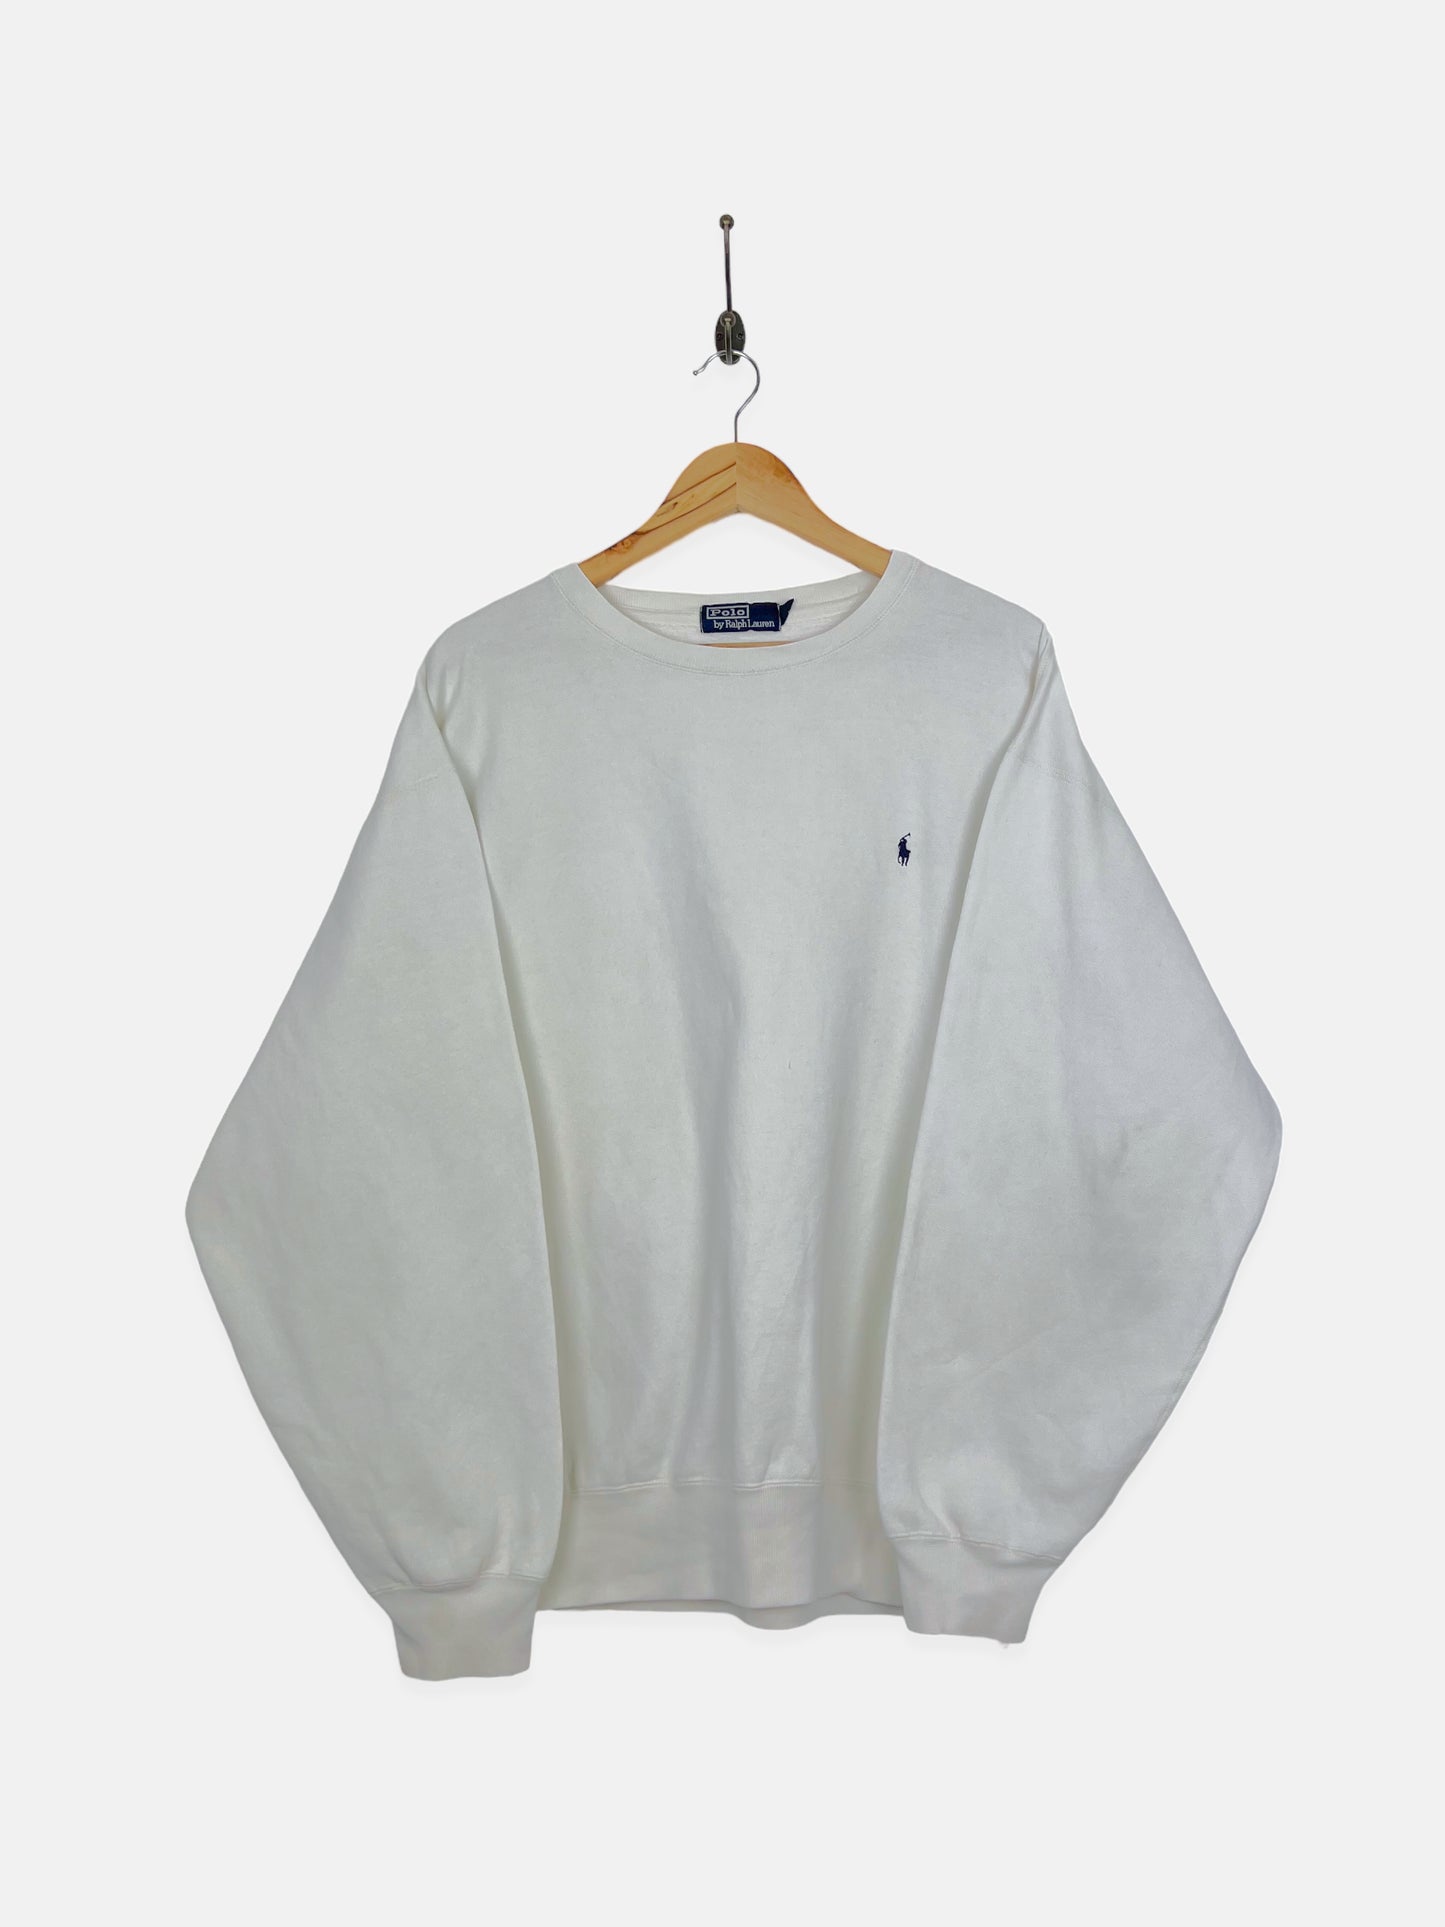 90's Ralph Lauren Embroidered Vintage Sweatshirt Size XL